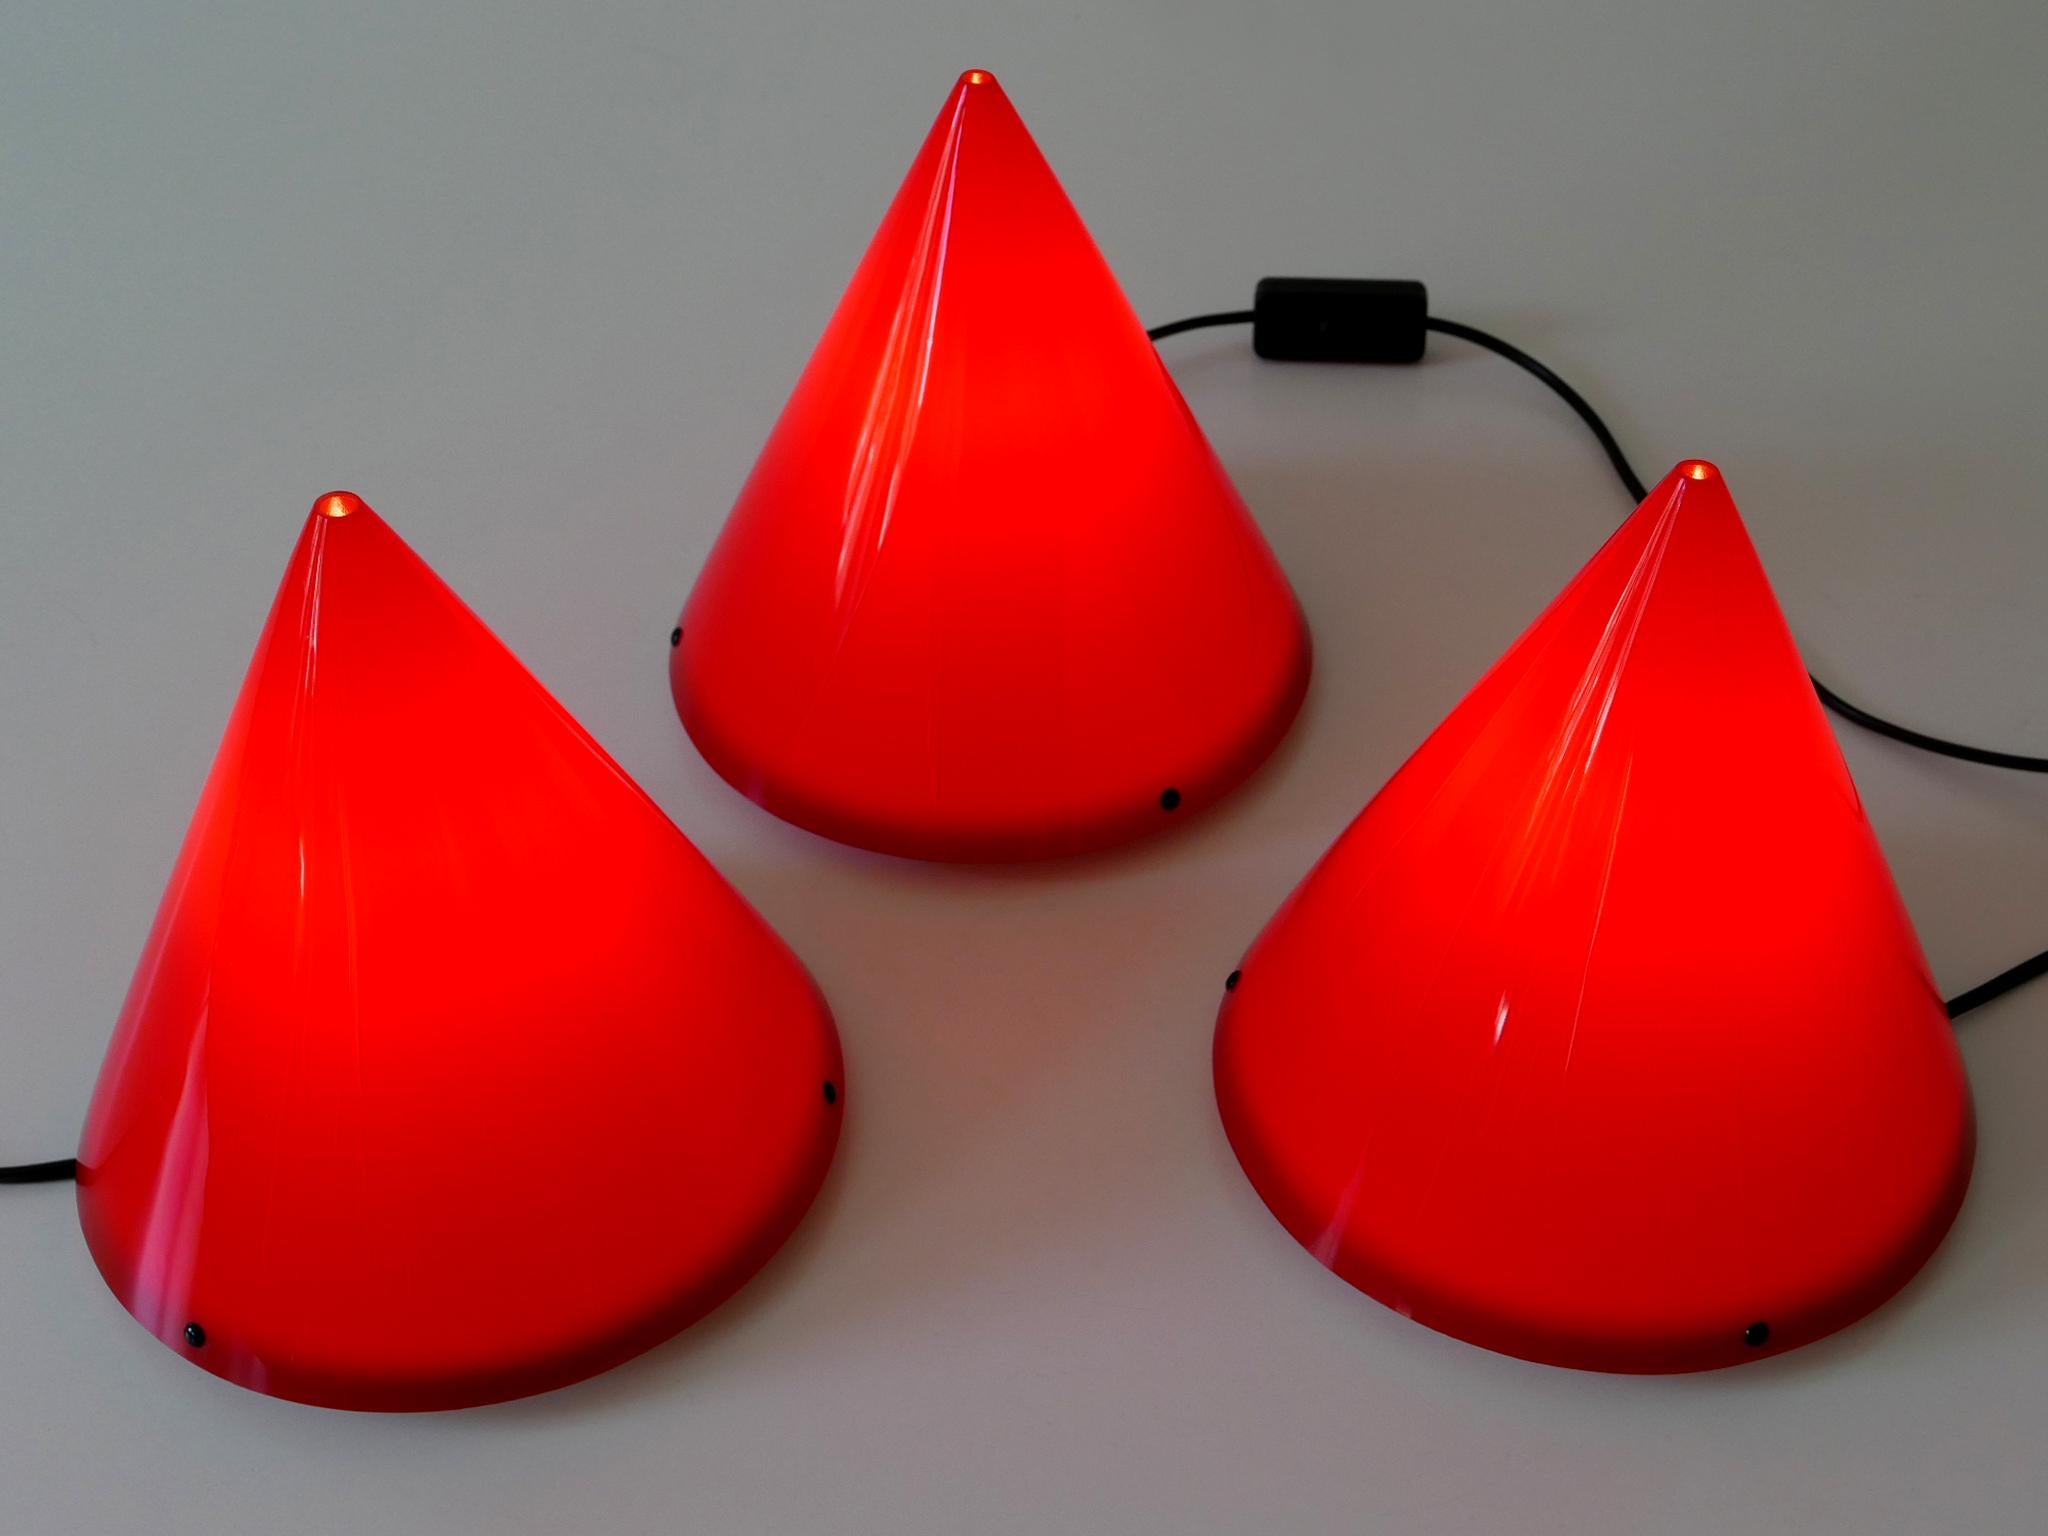 Ensemble de trois belles lampes de table ou appliques modernistes 'Cone' en acrylique rouge. Conçu par Verner Panton en 1995. Fabriqué par Poly Thema en petite édition (300 de chaque couleur). Chaque cône sera fixé à la base blanche par trois vis